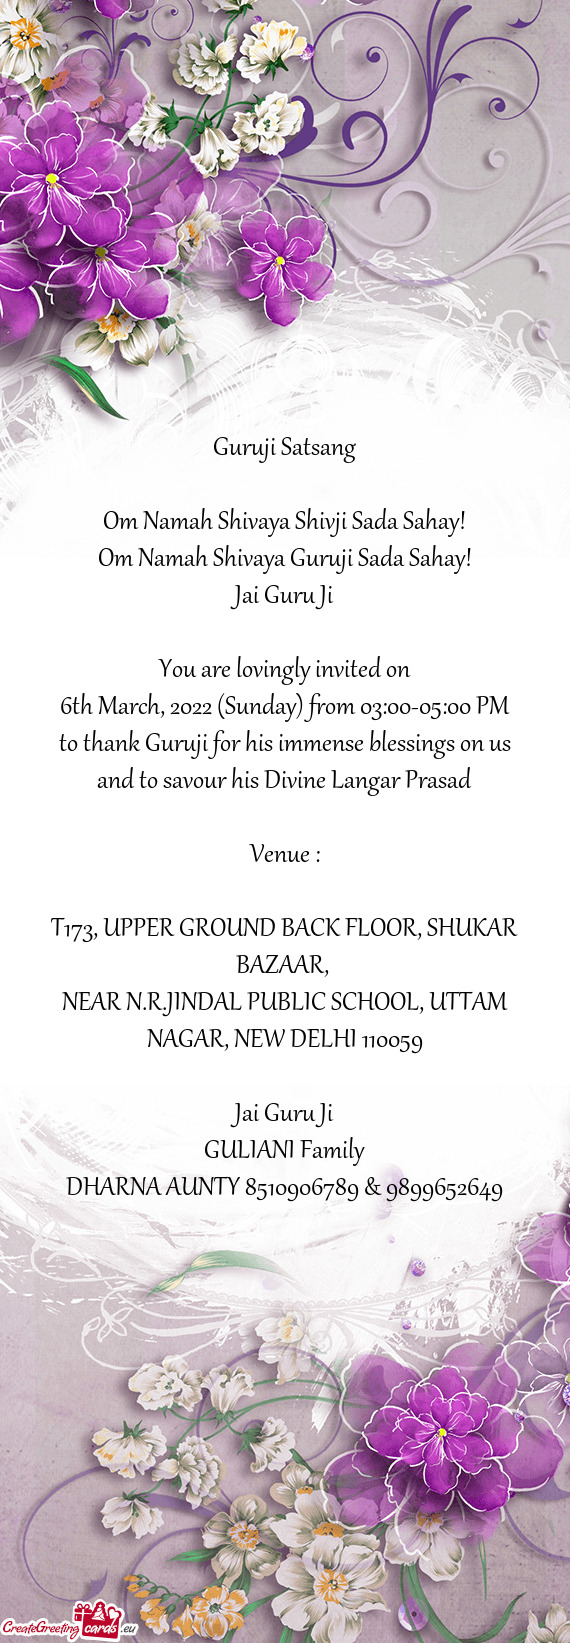 NEAR N.R.JINDAL PUBLIC SCHOOL, UTTAM NAGAR, NEW DELHI 110059